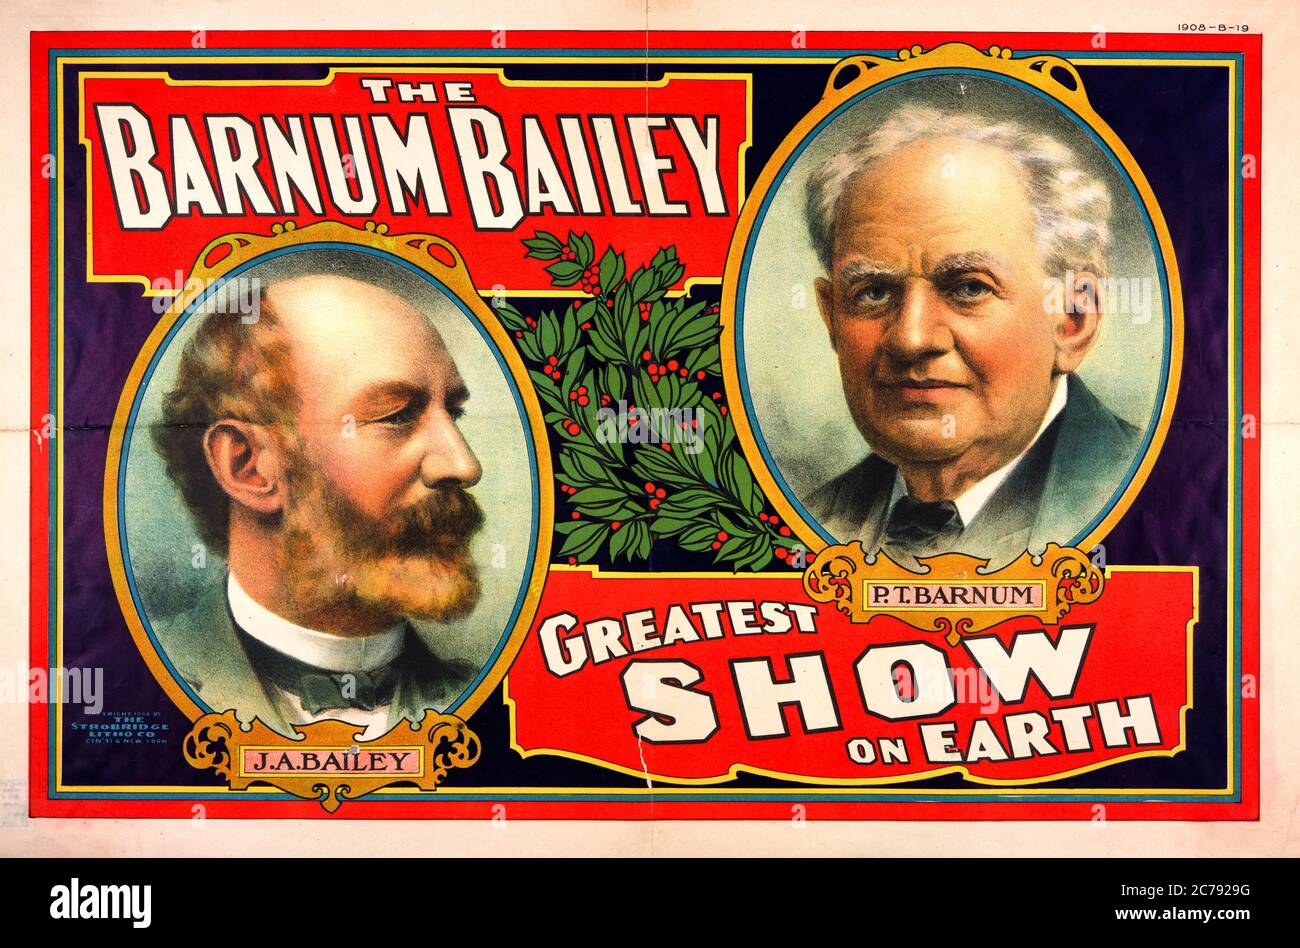 Il, Barnum Bailey, più grande spettacolo sulla terra, poster circo con ritratto, 1908 Foto Stock